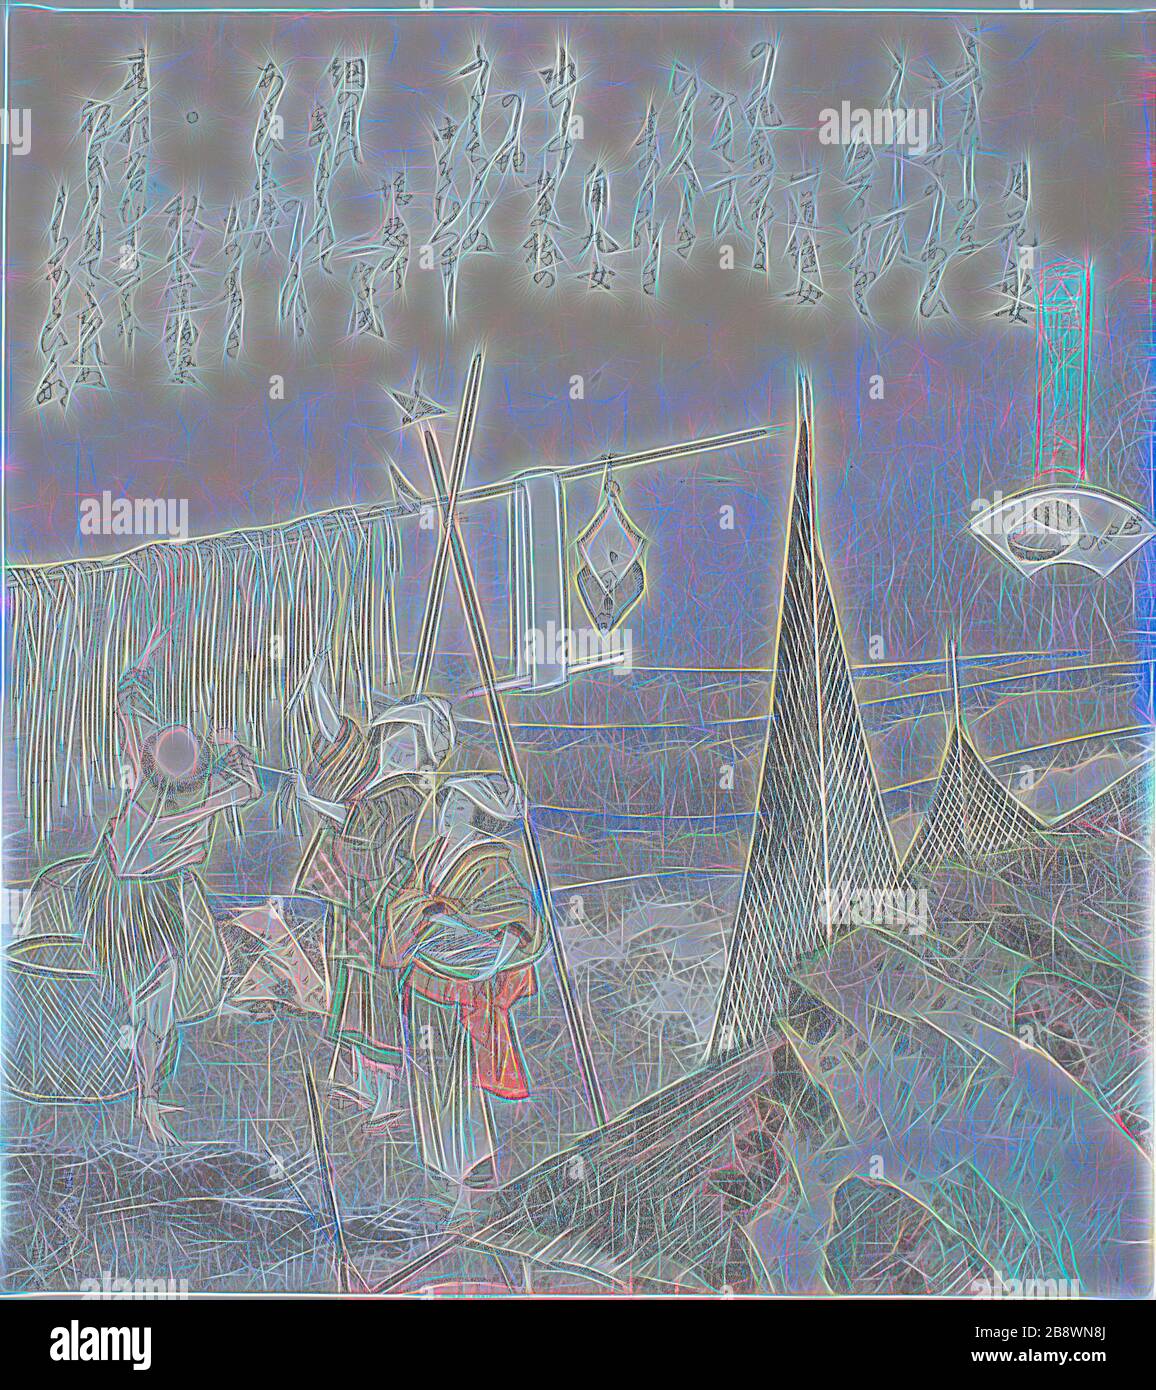 Abalone an Dry hängen, Illustration für Abalone (Awabi), aus der Serie EIN passendes Spiel mit Gedichtschalen aus der Genroku-Zeit (Genroku kasen kai Awase), 181, Katsushika Hokusai ?? ??, Japanisch, 170-1849, Japan, Farbholzholzmuster mit Metallpigmenten, Surimono shikishiban, 19,7 x 17,7 cm, von Gibon neu vorgestellt, Design von warmfröhlichem Leuchten von Helligkeit und Lichtstrahlen. Klassische Kunst mit moderner Note neu erfunden. Fotografie, inspiriert vom Futurismus, die dynamische Energie moderner Technologie, Bewegung, Geschwindigkeit und Kultur revolutionieren. Stockfoto